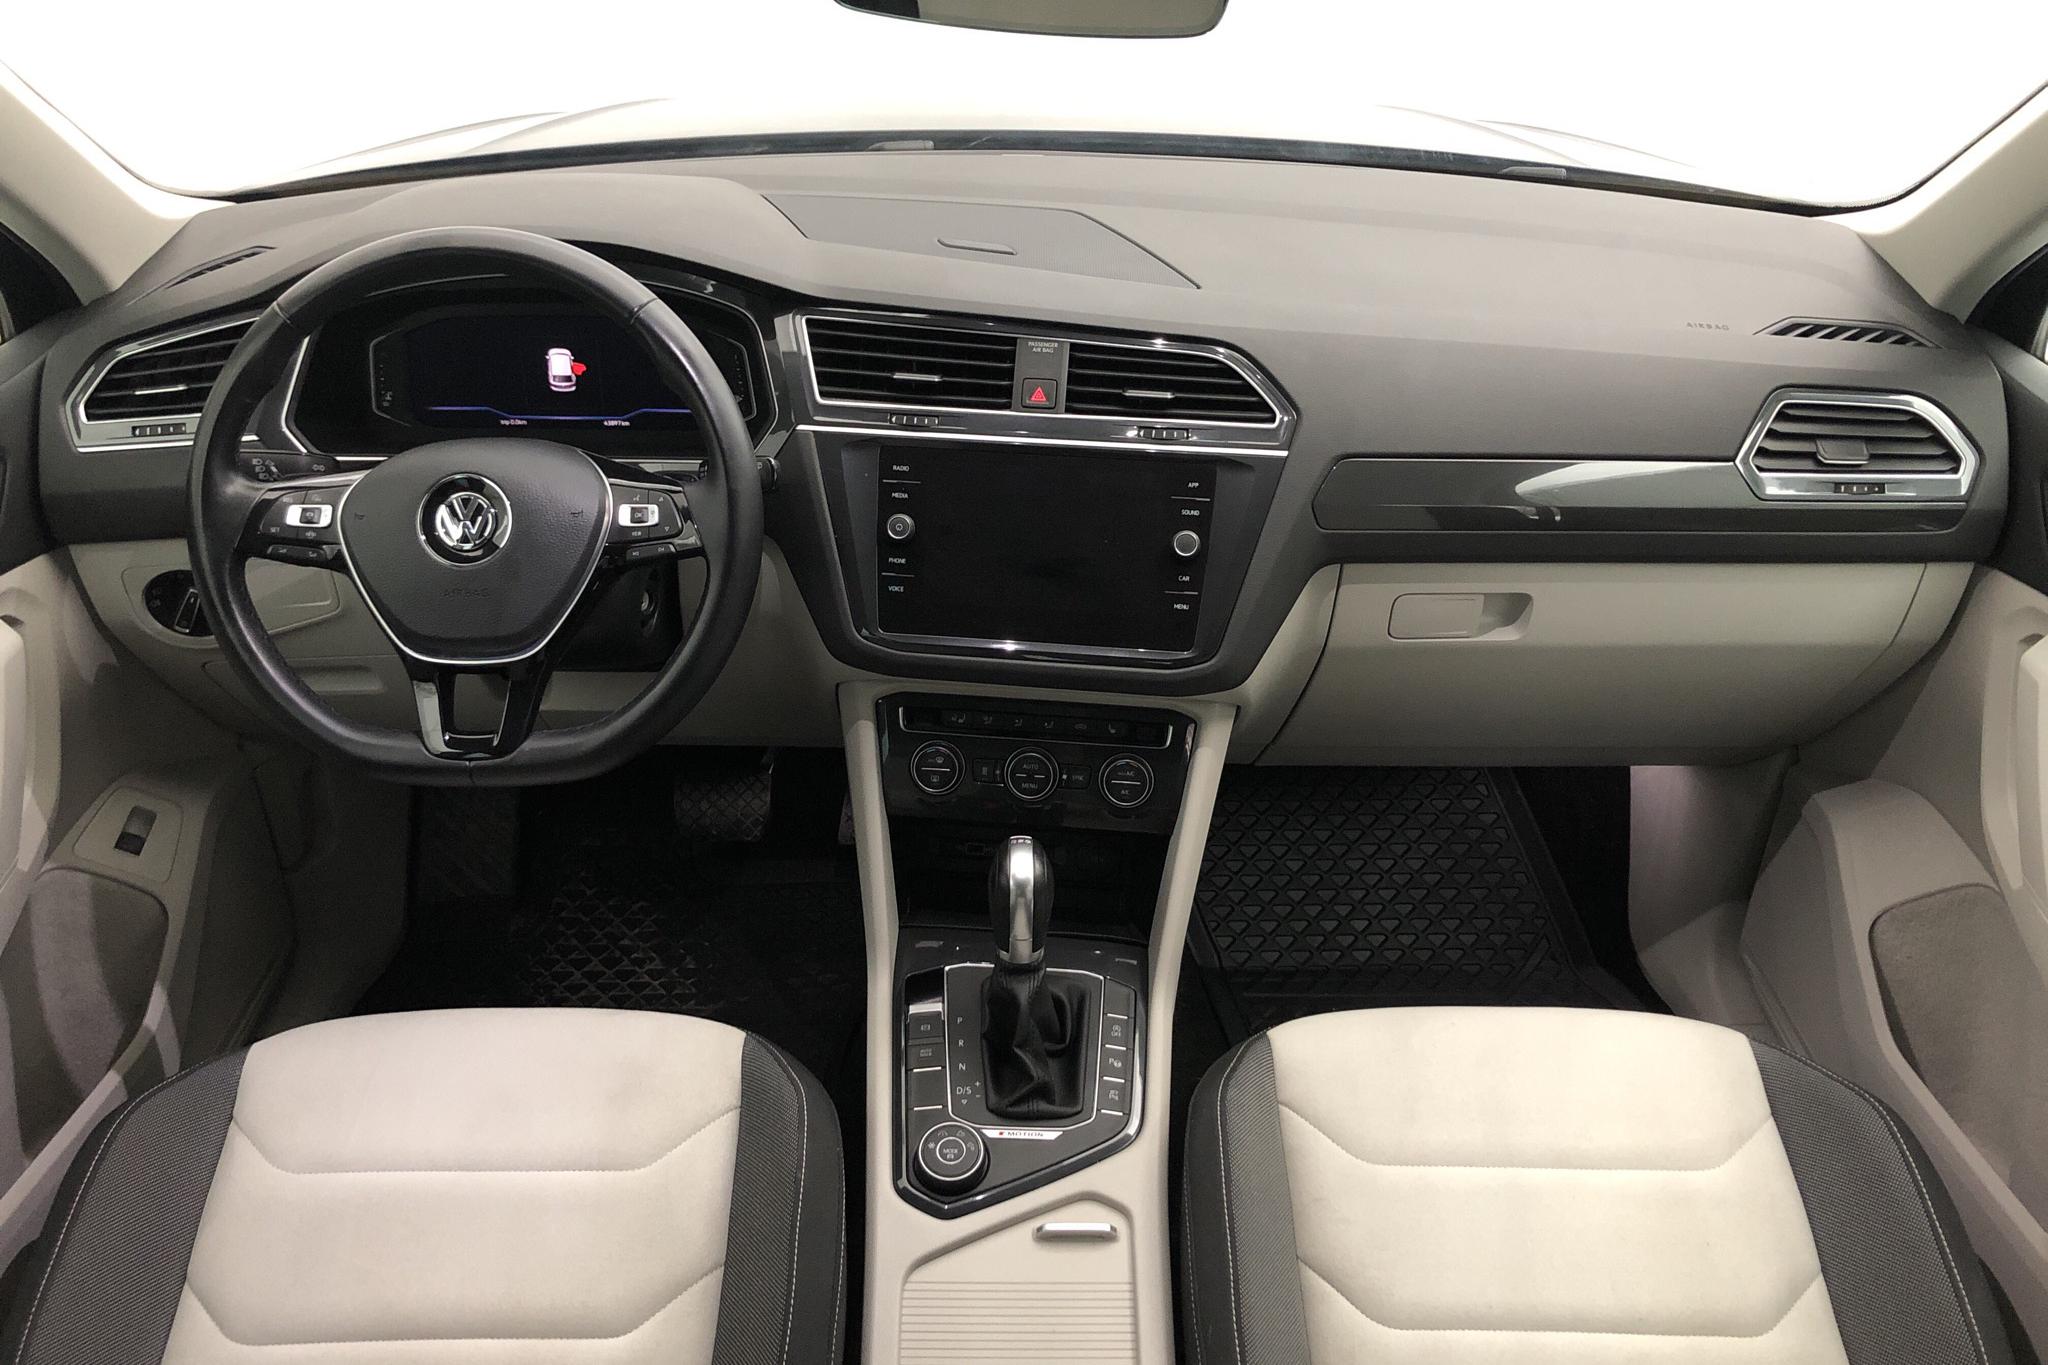 VW Tiguan 2.0 TDI 4MOTION (190hk) - 43 900 km - Automatic - blue - 2019